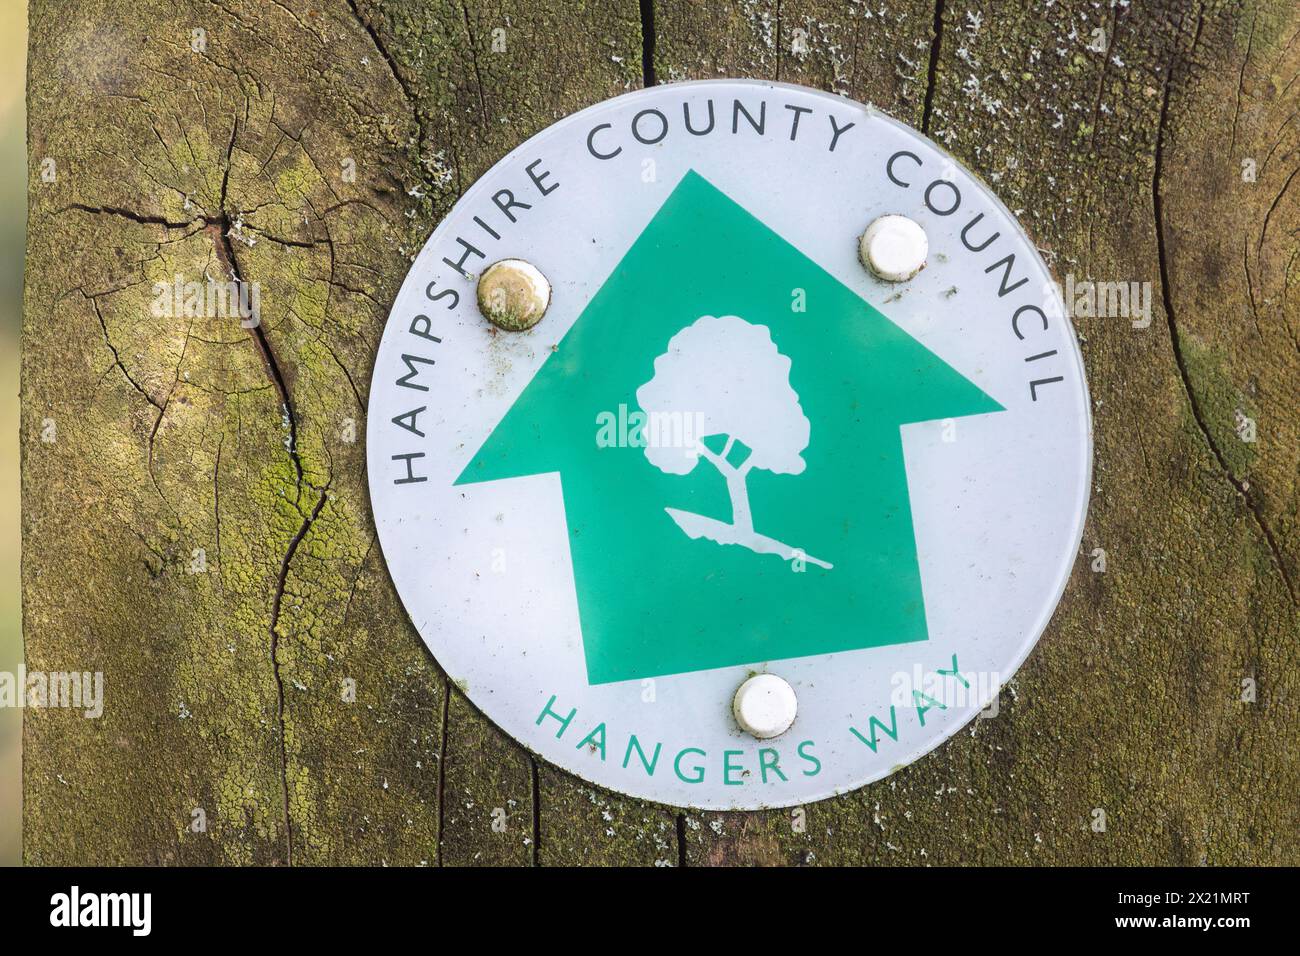 Marqueur de sentier Hangers Way sur le poteau, panneau du Hampshire Country Council pour le sentier pédestre de 34 km de long, Hampshire, Angleterre, Royaume-Uni Banque D'Images